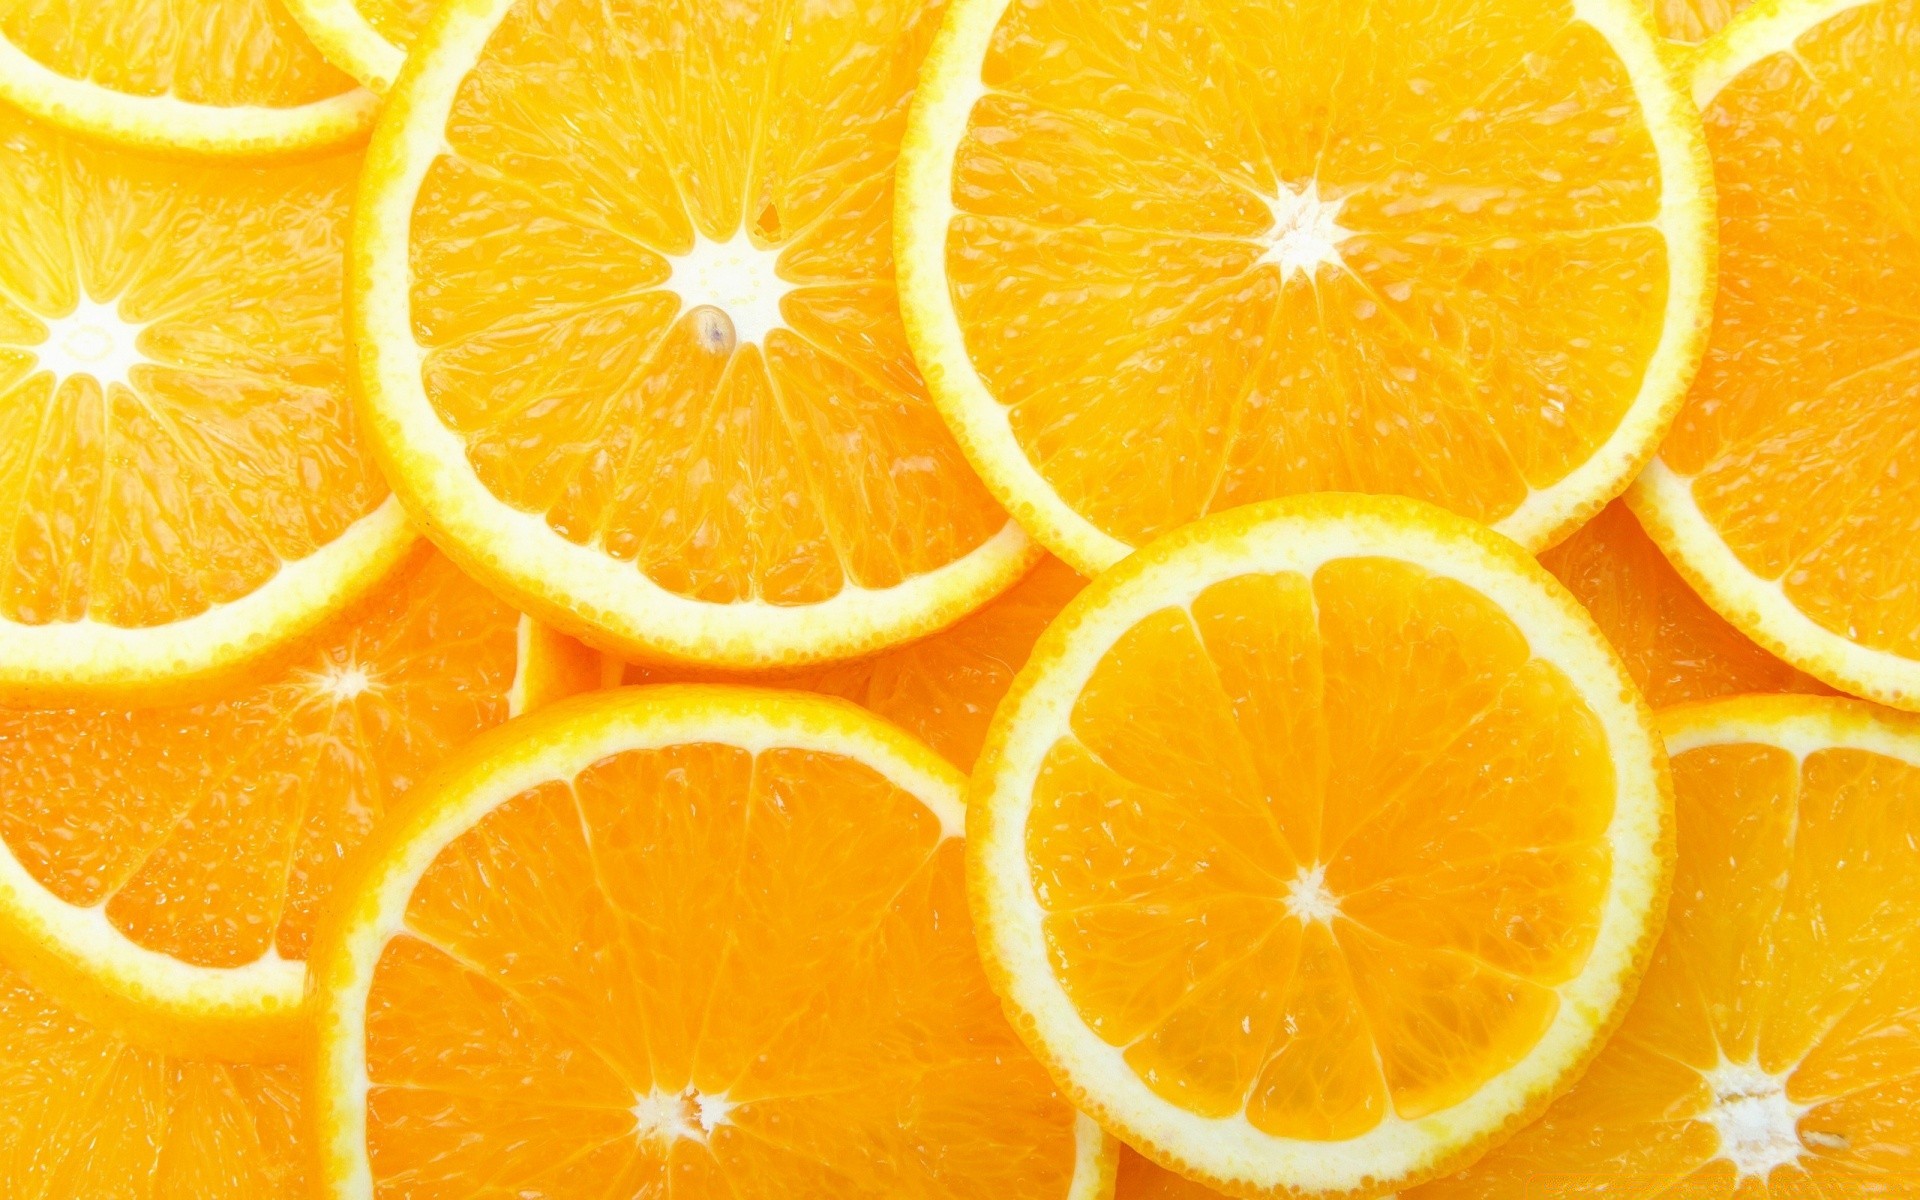 текстуры цитрусовые фрукты сочные тропический лимон сок кондитерское изделие срез еда грейпфрут половина здоровый ринд суккулент рабочего стола кисло здоровья цвет вырезать раздел